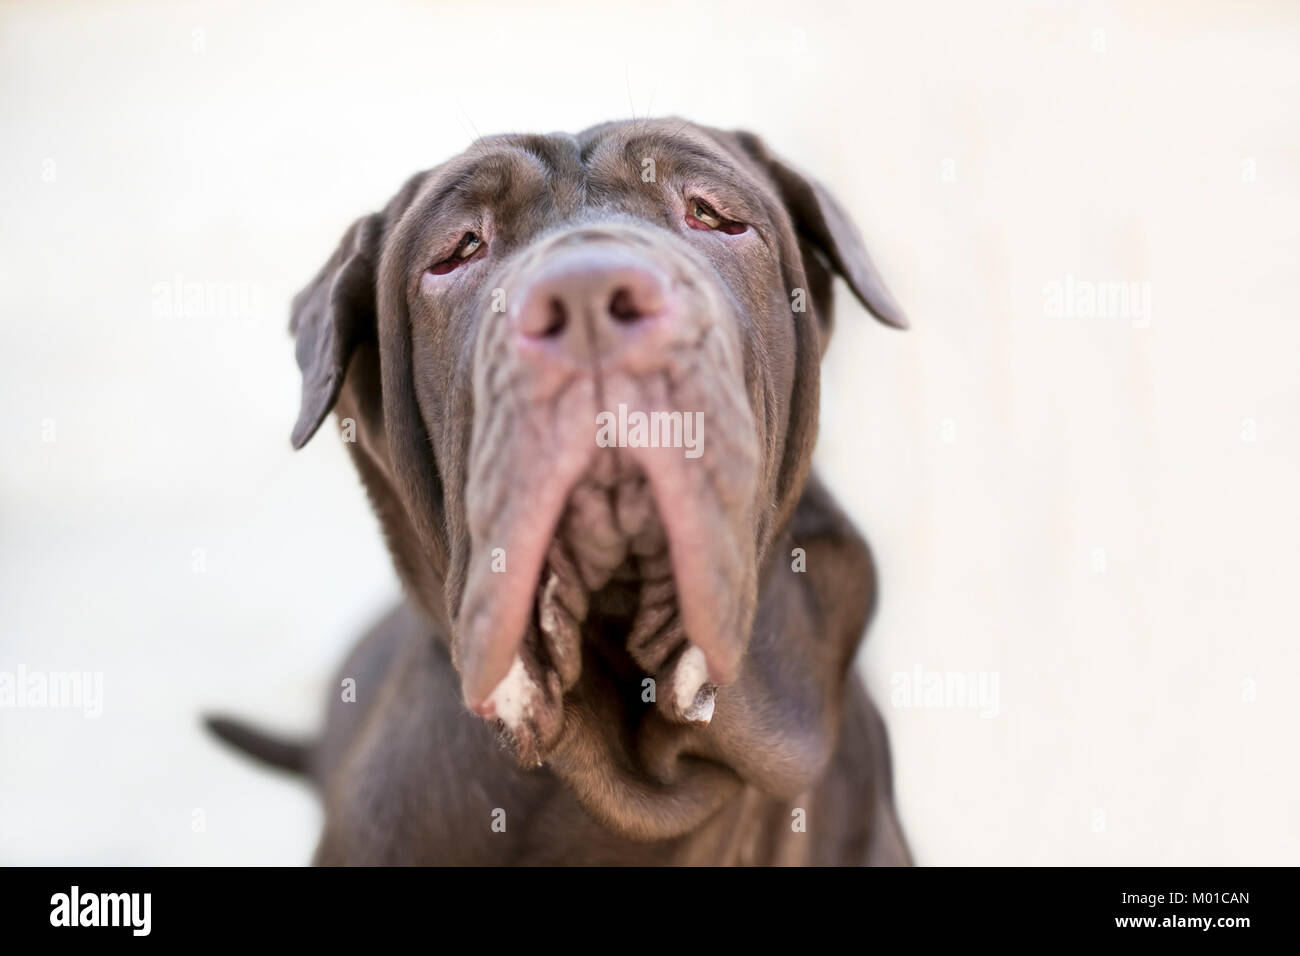 A Neapolitan Mastiff dog Stock Photo